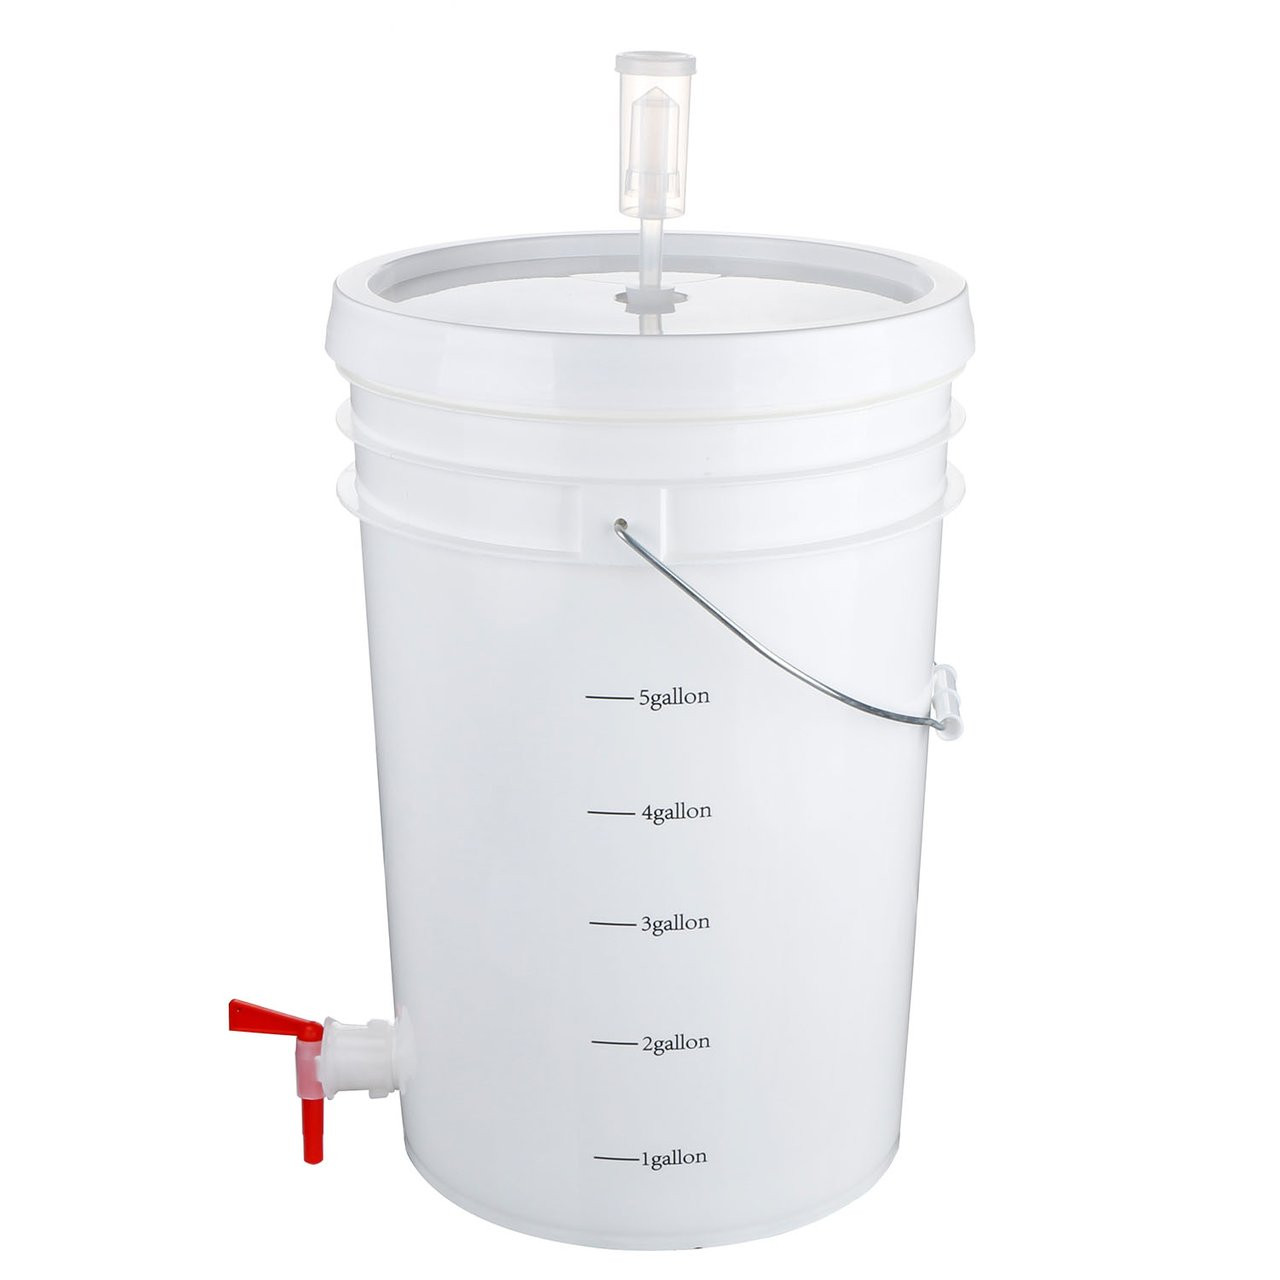 2 Gallon Bottling / Fermenting Bucket Lid for 2 Gallon Fermenting